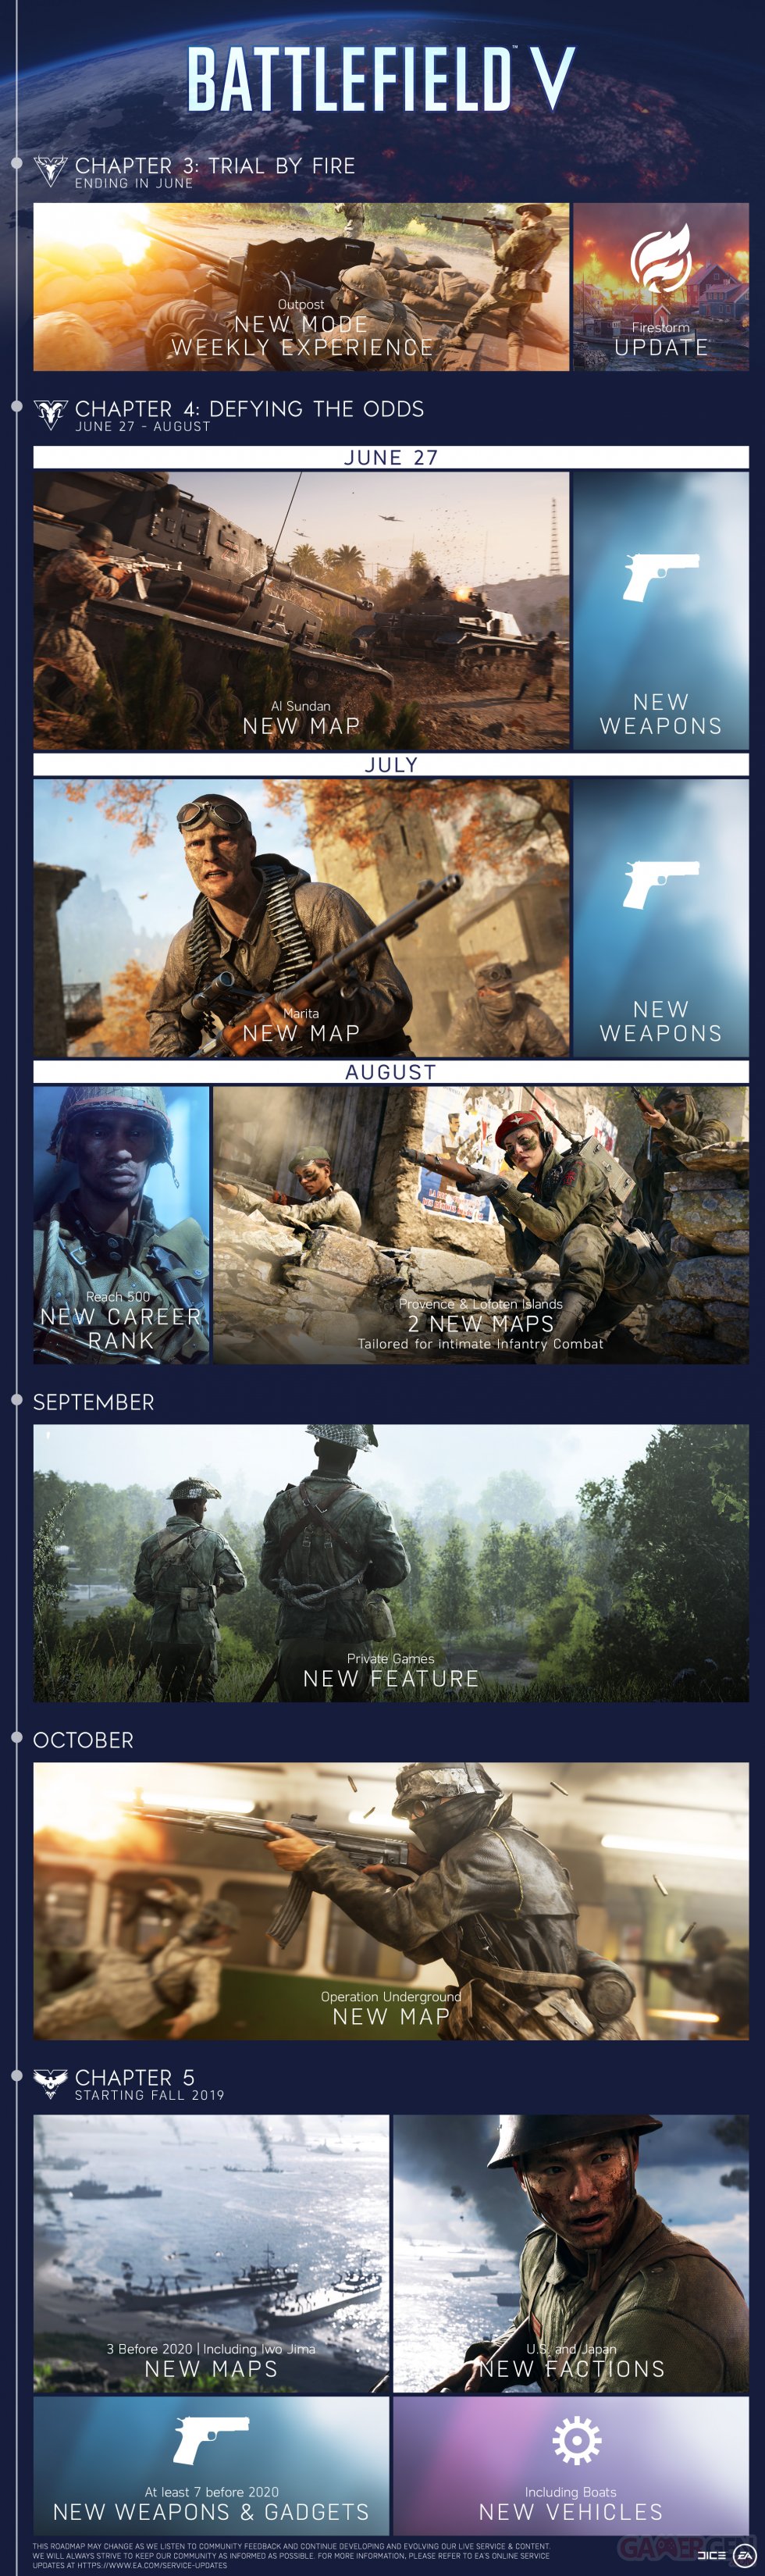 Battlefield V  images planning